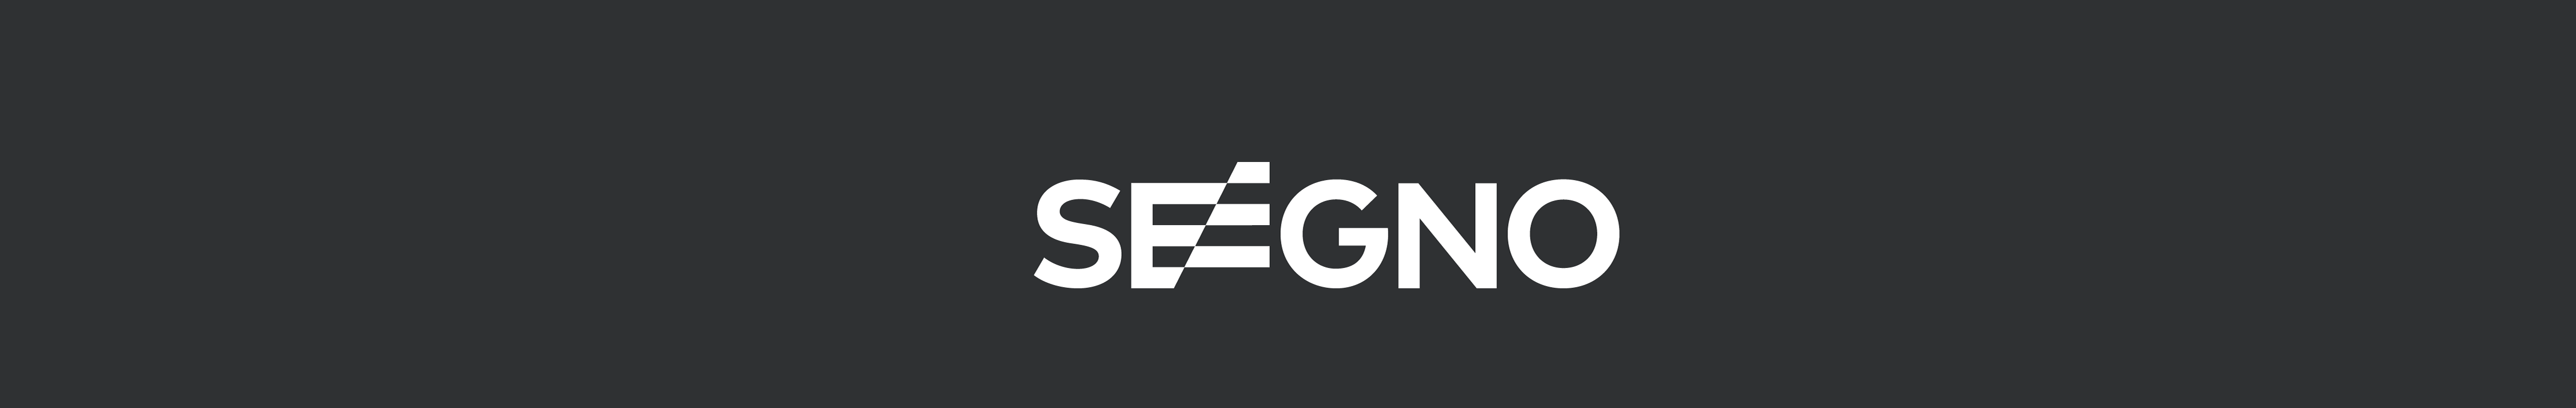 Seegno .'s profile banner